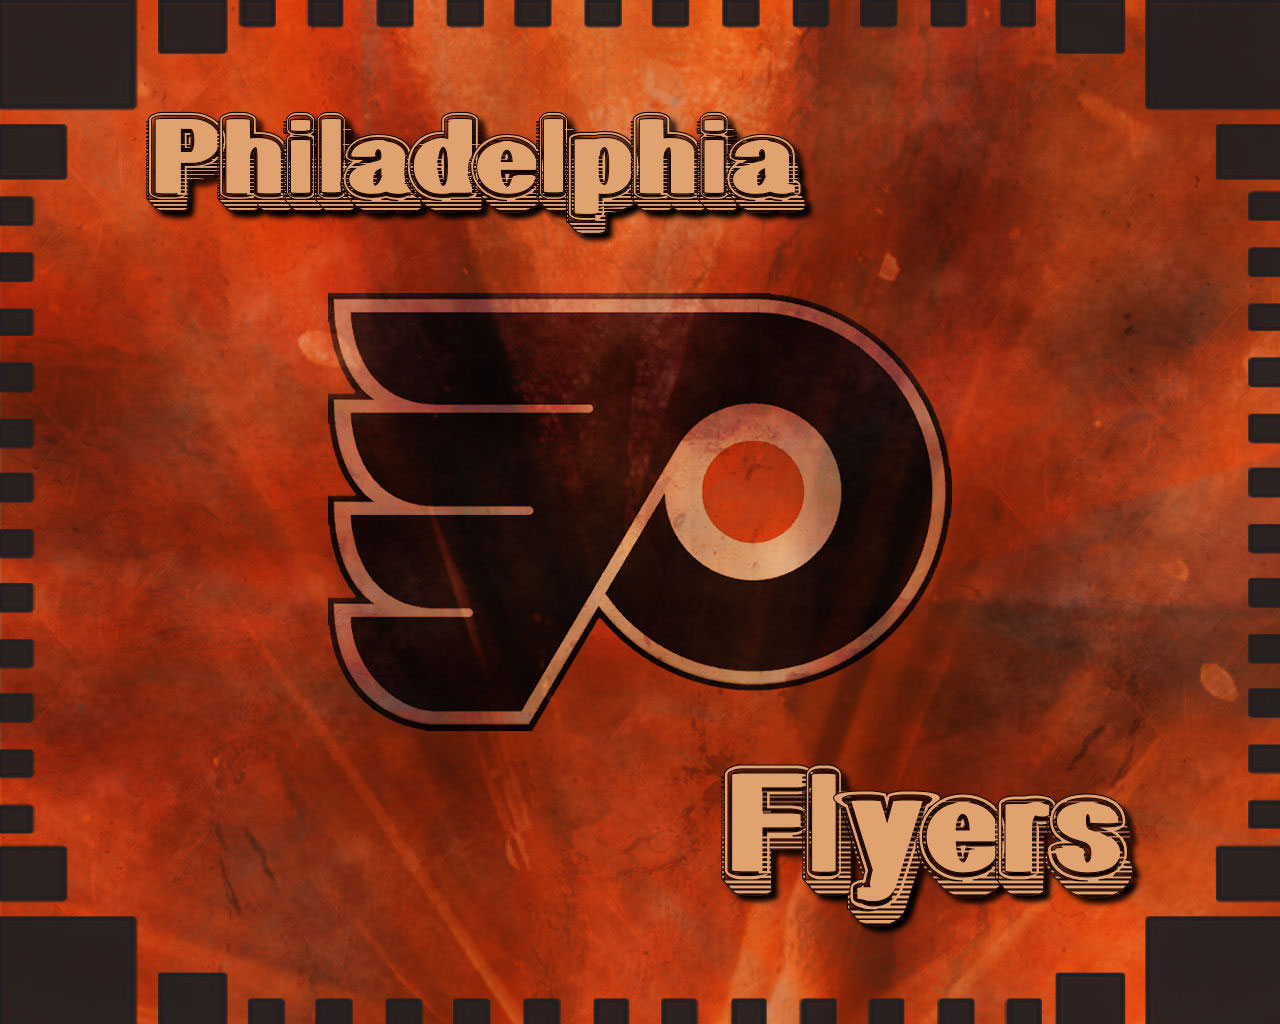 Philadelphia Flyers Wallpaper Schedule